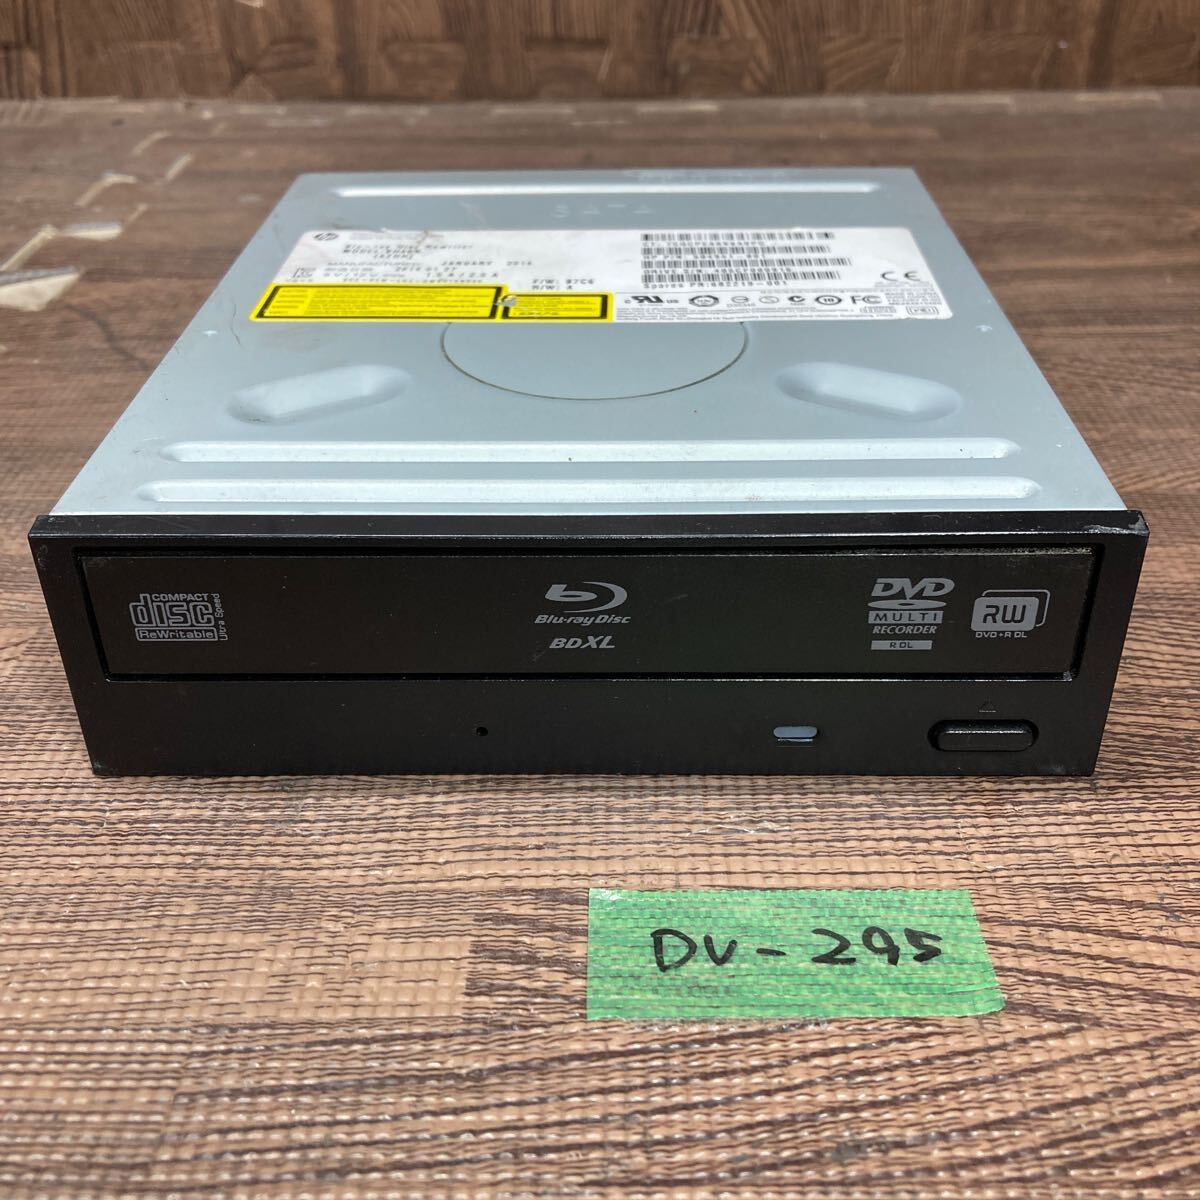 GK супер-скидка DV-295 Blu-ray Drive DVD настольный HP BH40N (A2HH) 2014 год производства BDXL соответствует модель Blu-ray,DVD воспроизведение подтверждено б/у товар 